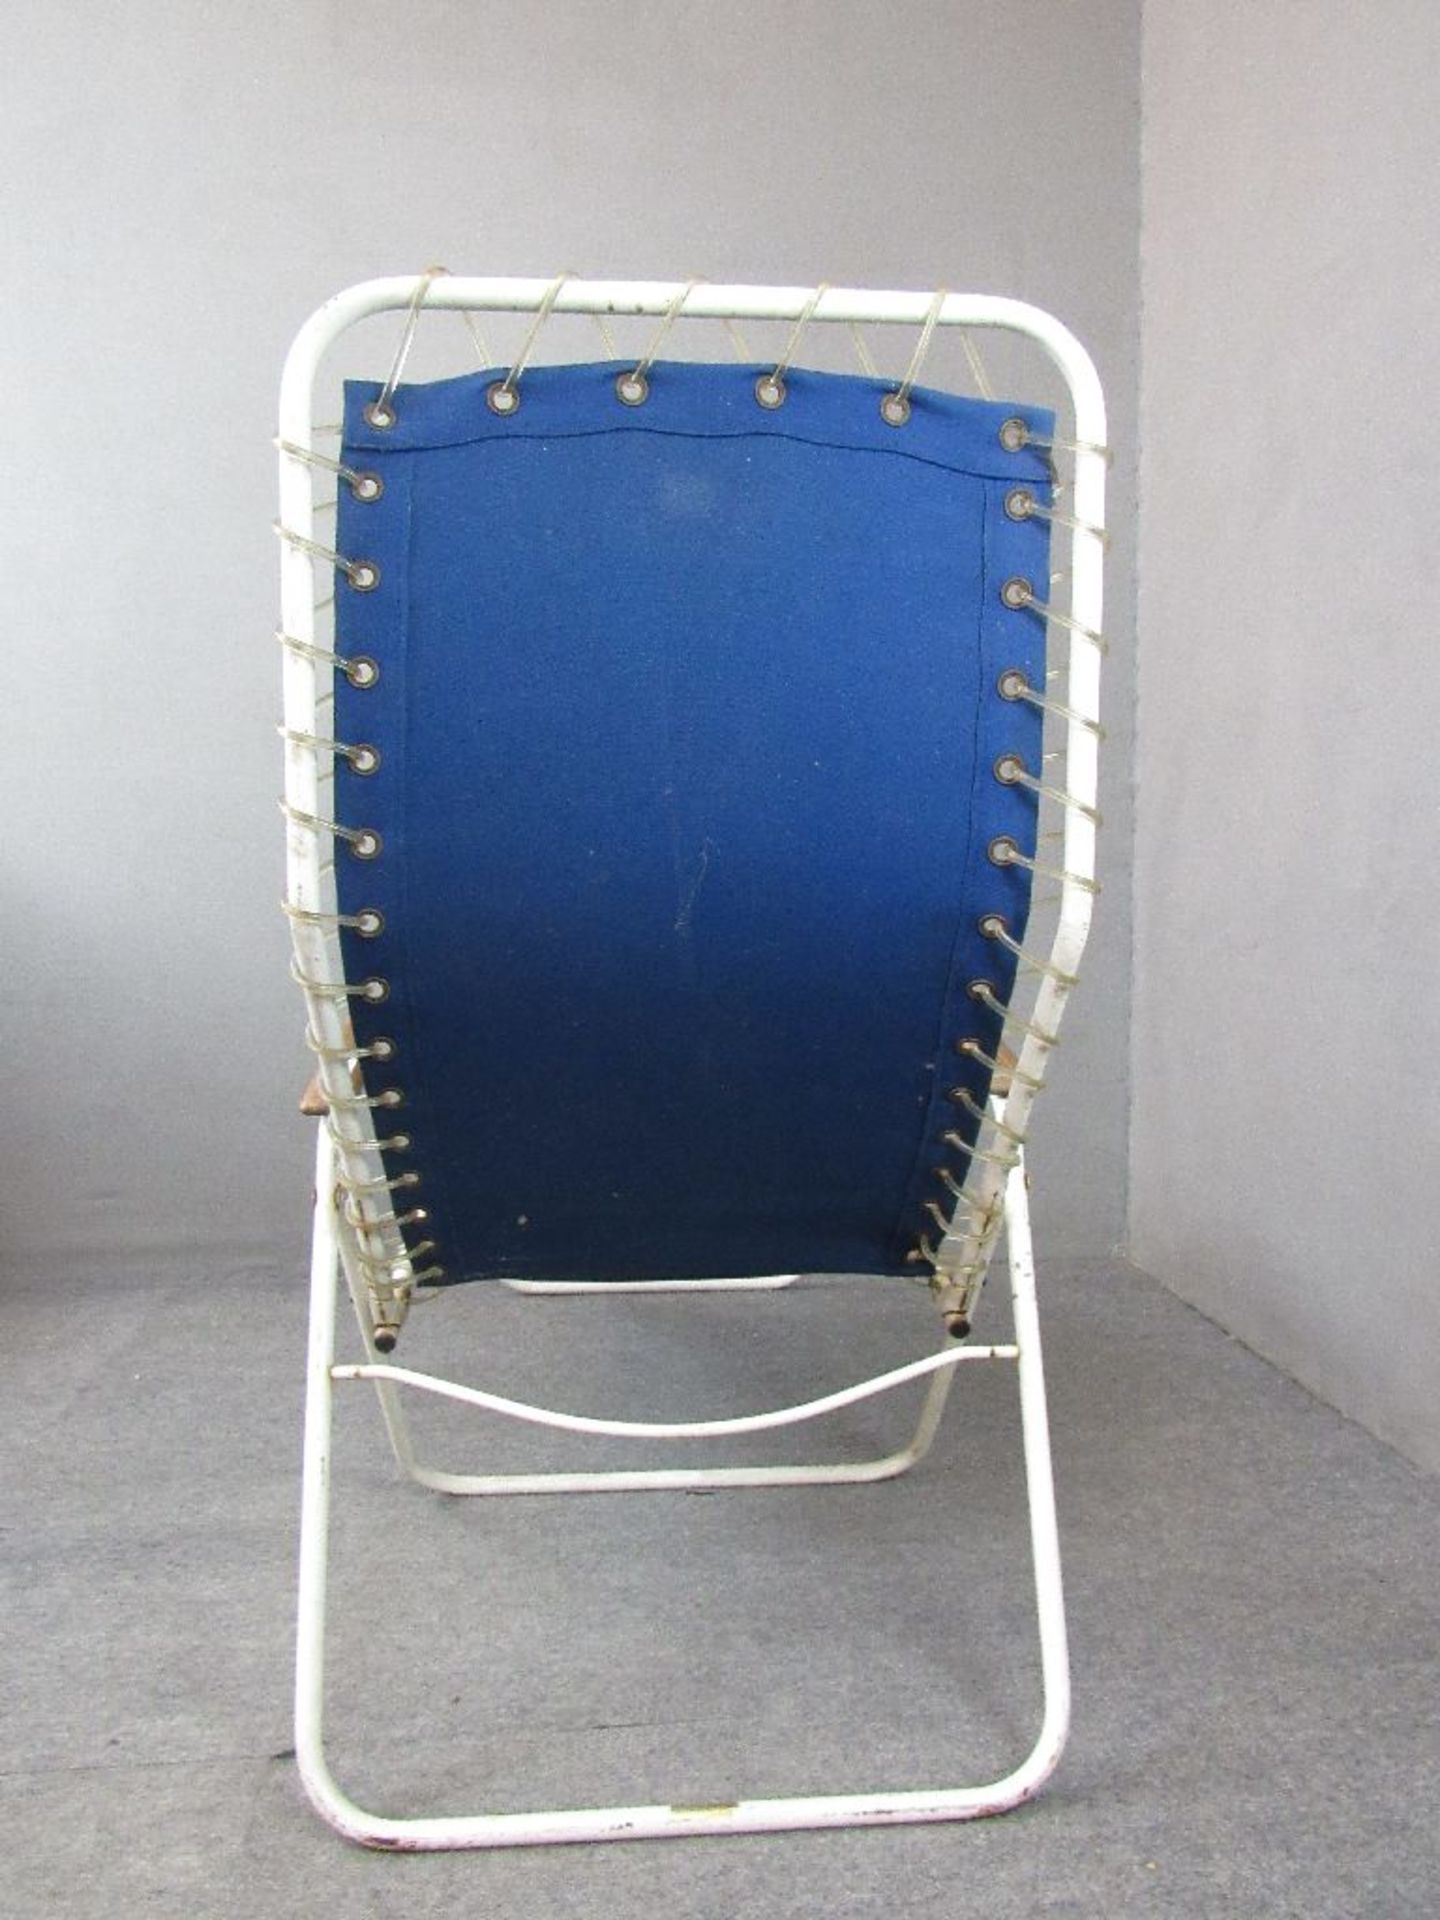 Zwei Vintage 60er Jahre Liegestühle Teak Armlehnen Made in Denmark Hersteller Homa 2 Stück blau - Bild 11 aus 12